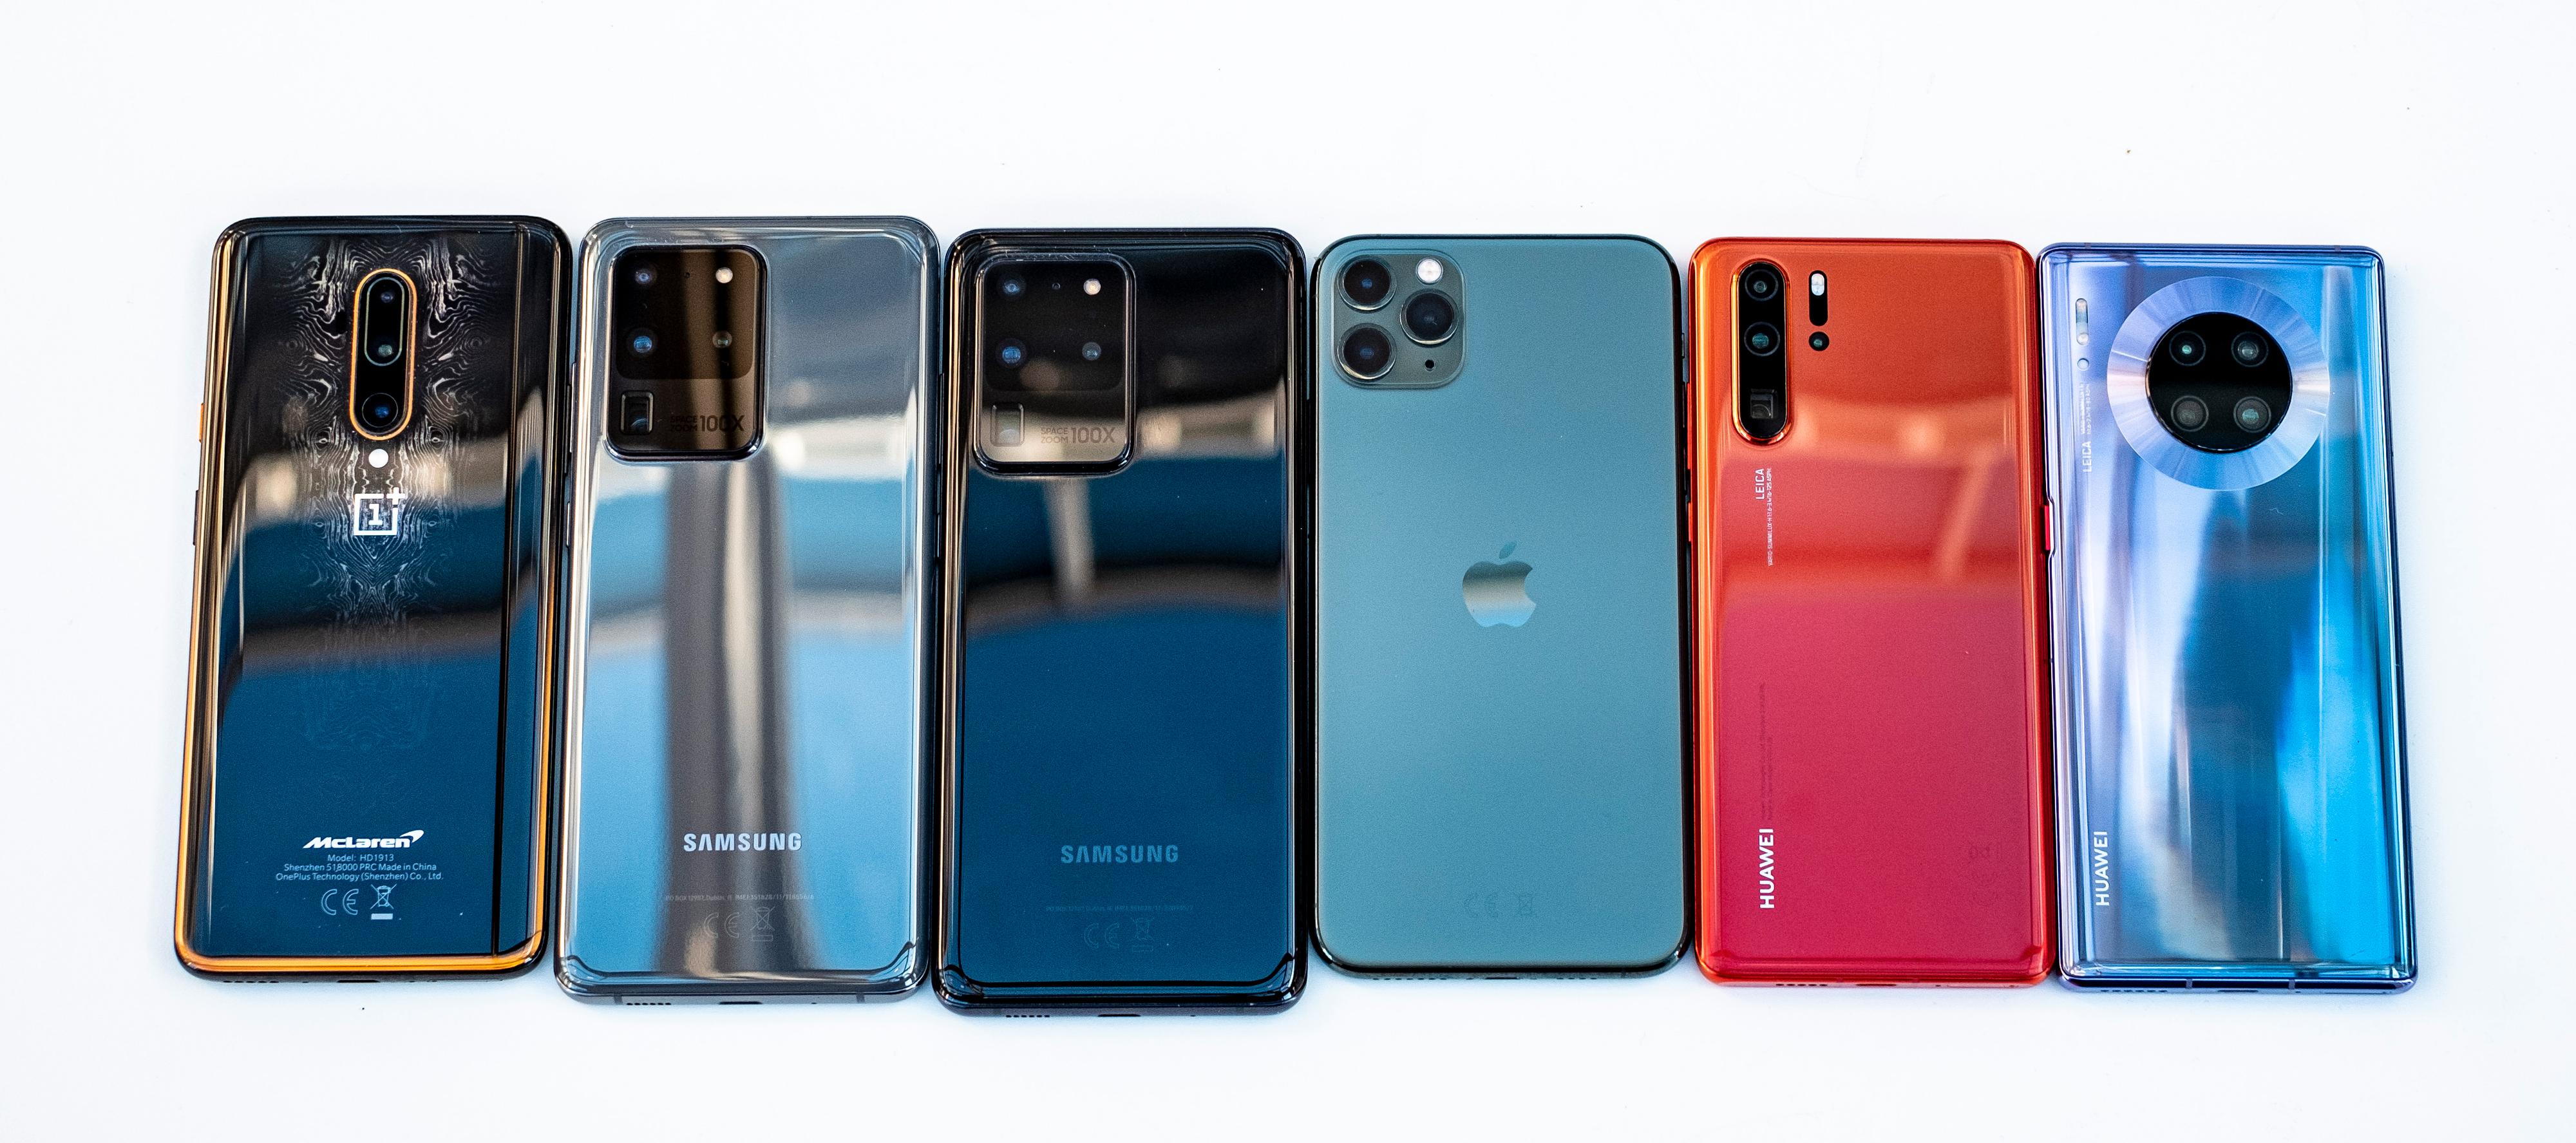 Her er noen av det siste årets viktigste mobiler. Fra venstre: OnePlus 7T Pro, Galaxy S20 Ultra i grått og svart, Apple iPhone 11 Pro Max, Huawei  P30 Pro, Huawei Mate 30 Pro.